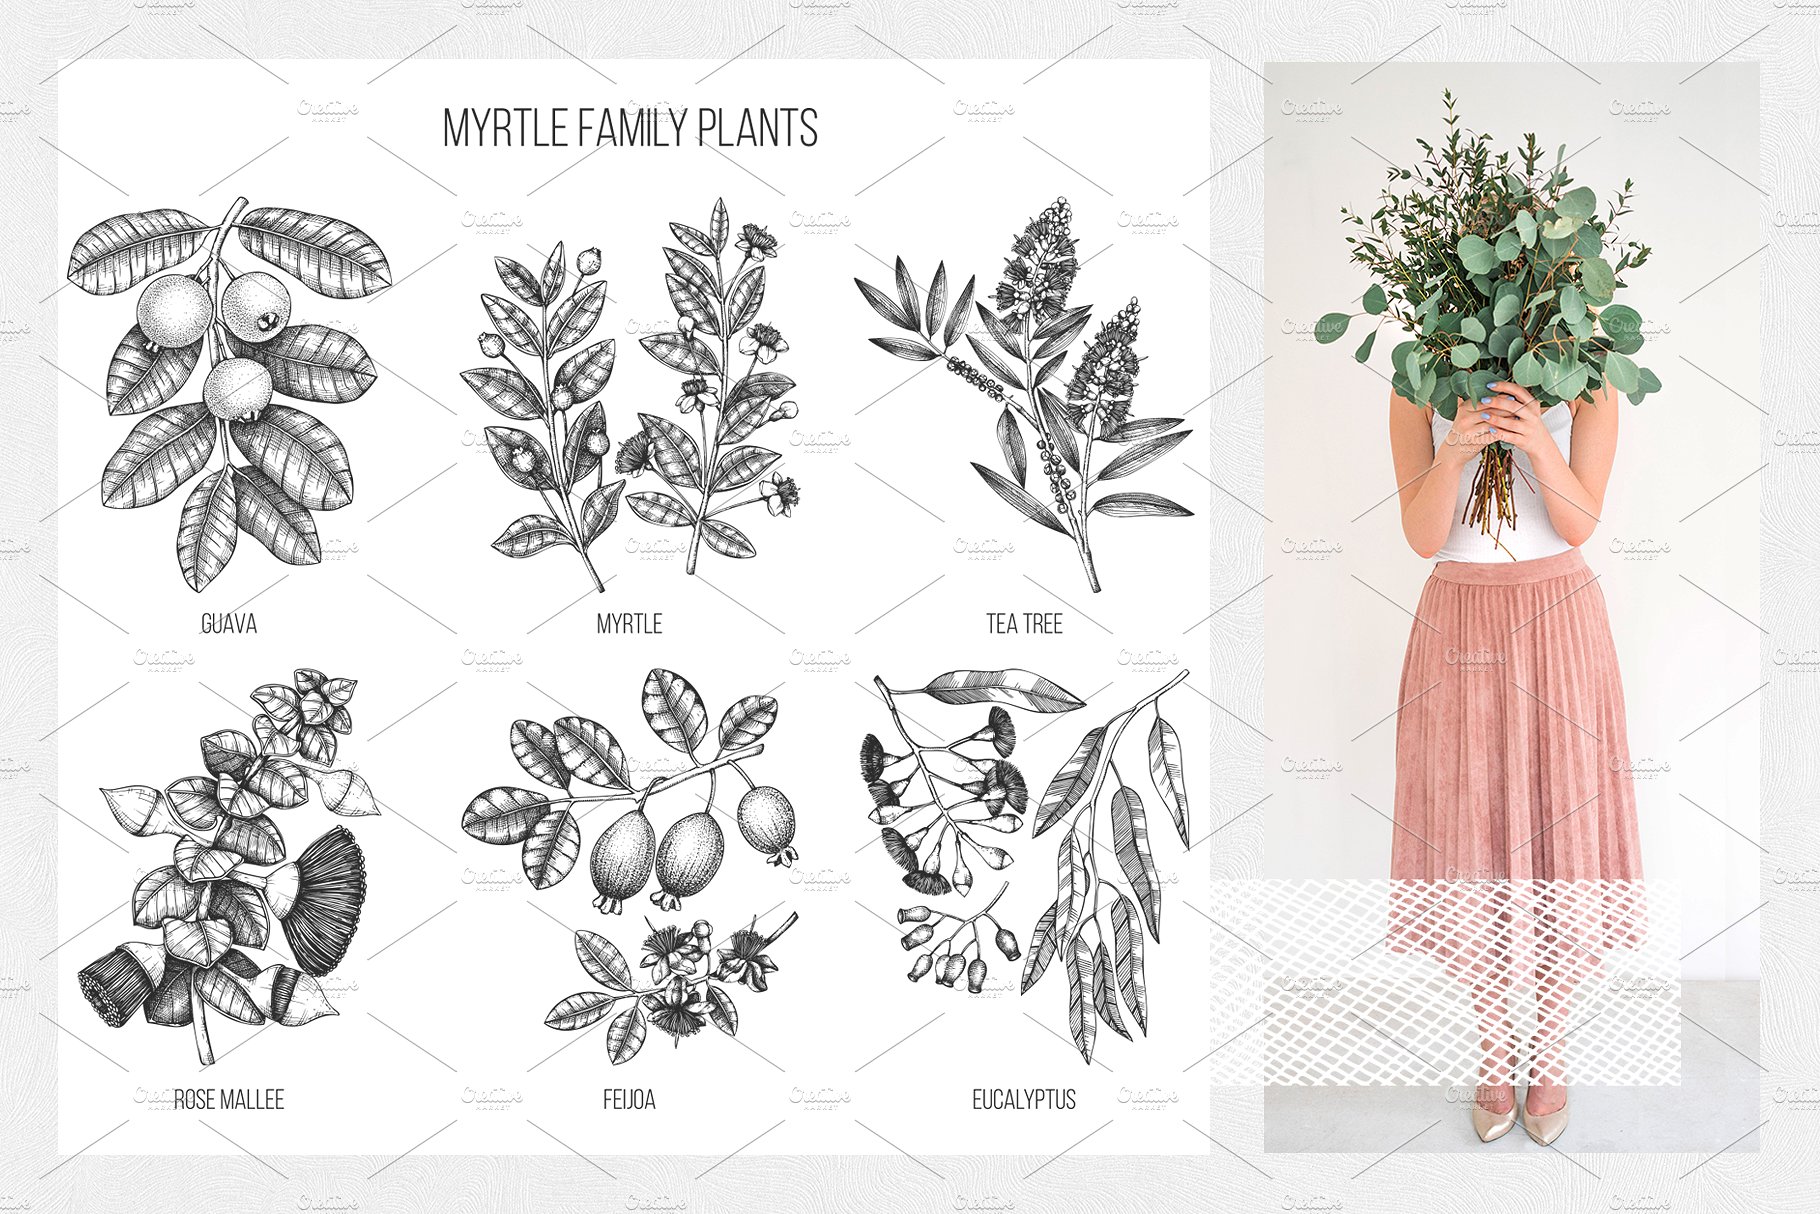 桃金娘属植物素描矢量图形 Vector Myrtle Plants Sketches插图(2)